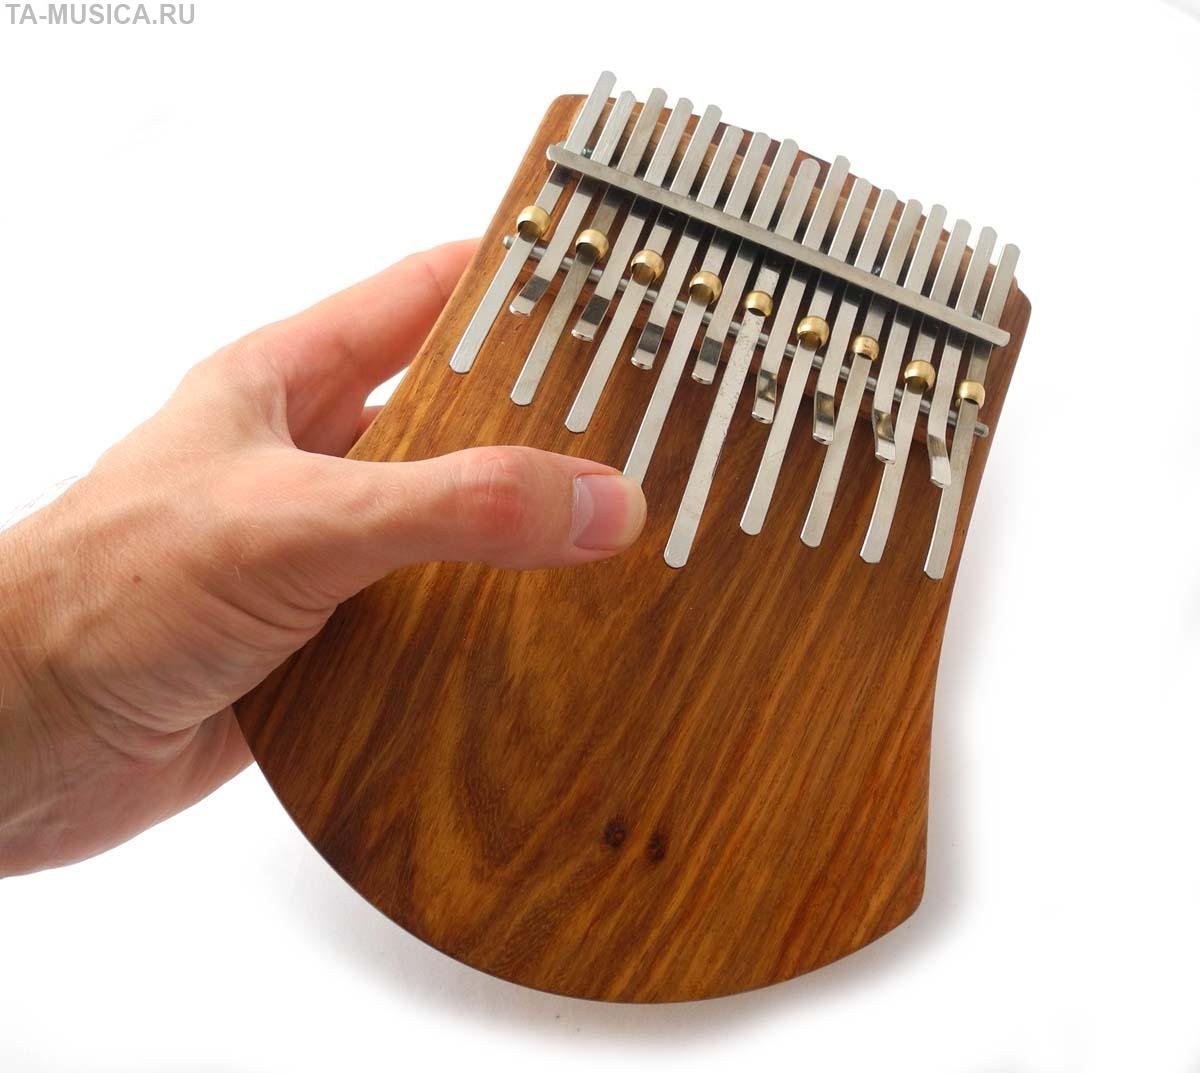 Литуус музыкальный инструмент